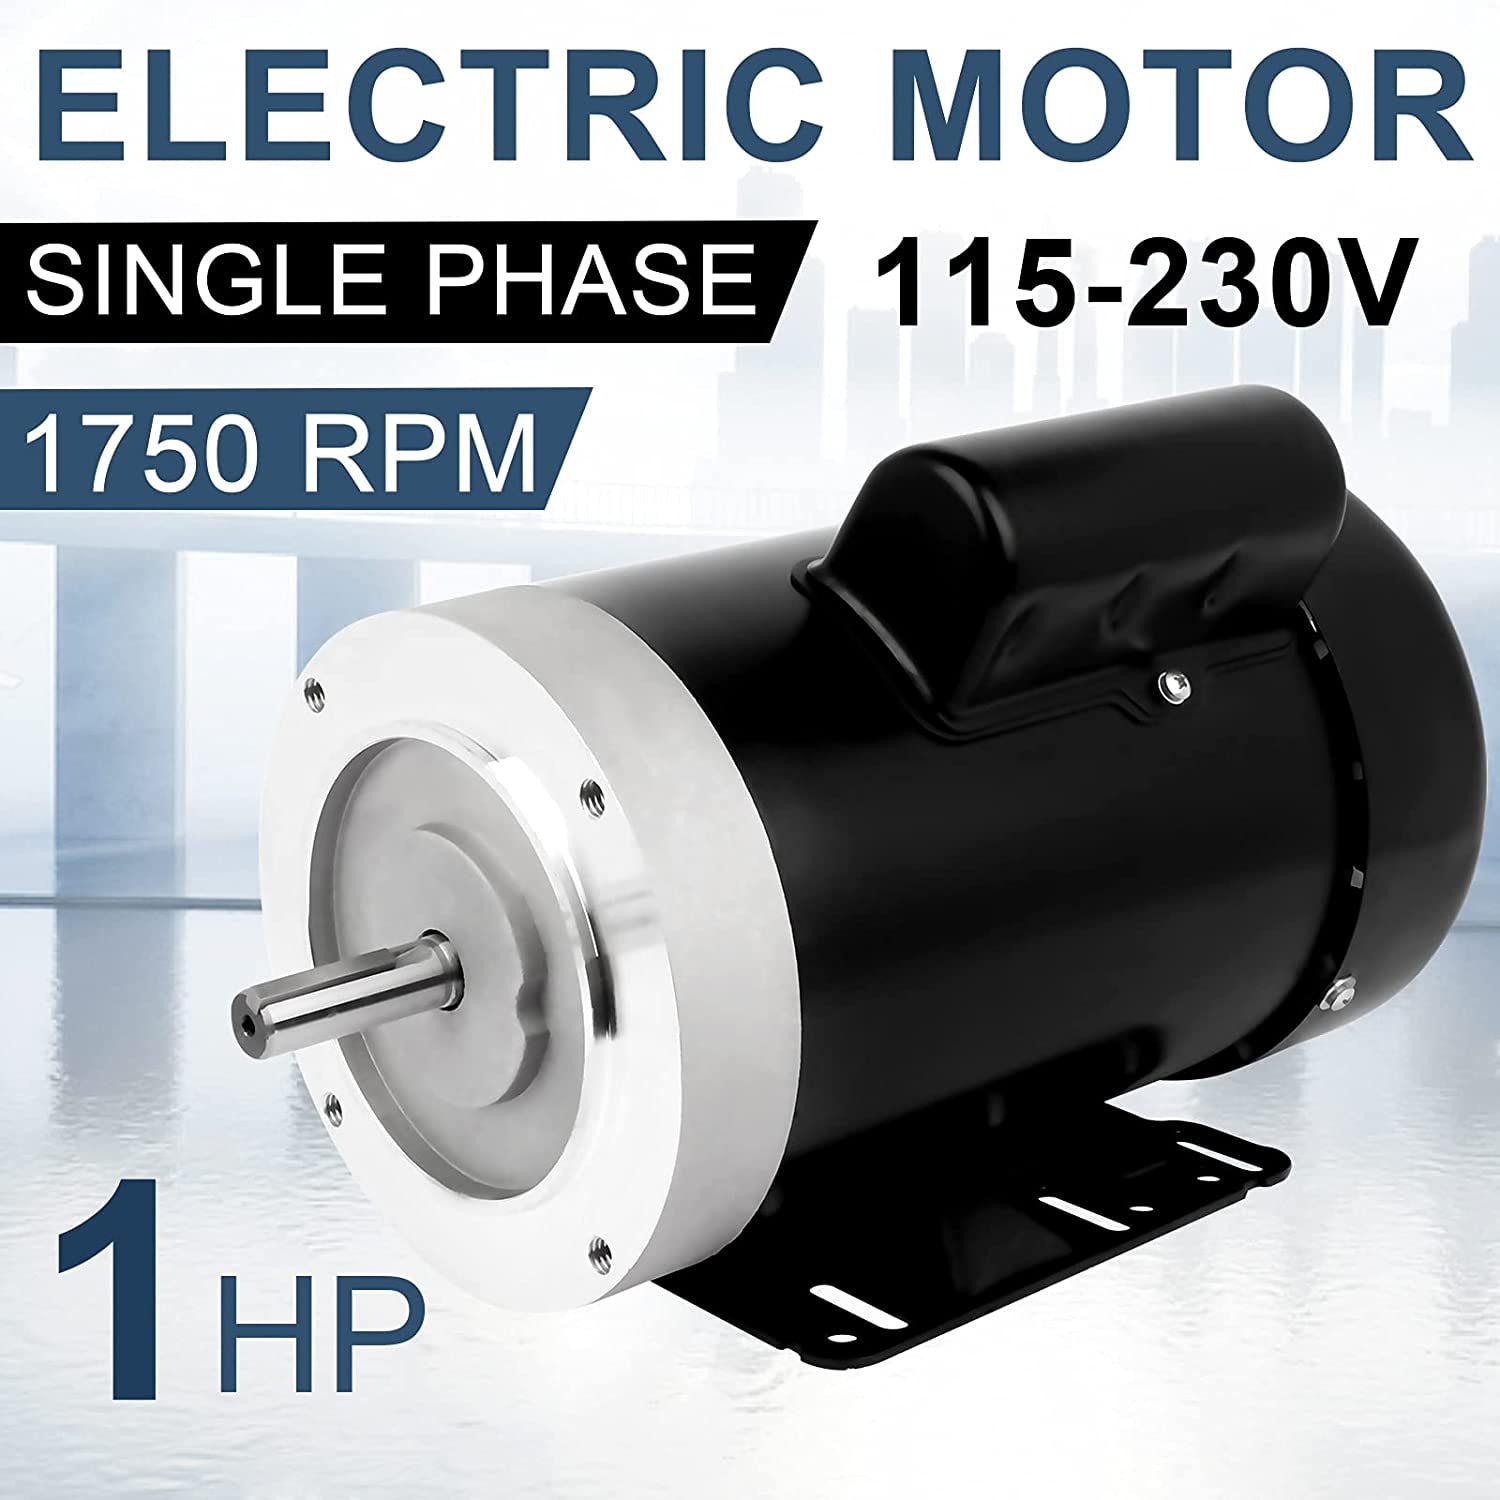 HP Electric Motor Farm Duty Single Phase Motor 1750RPM 115V/230V 56 Frame  13.6-6.8A CW/CCW TEFC